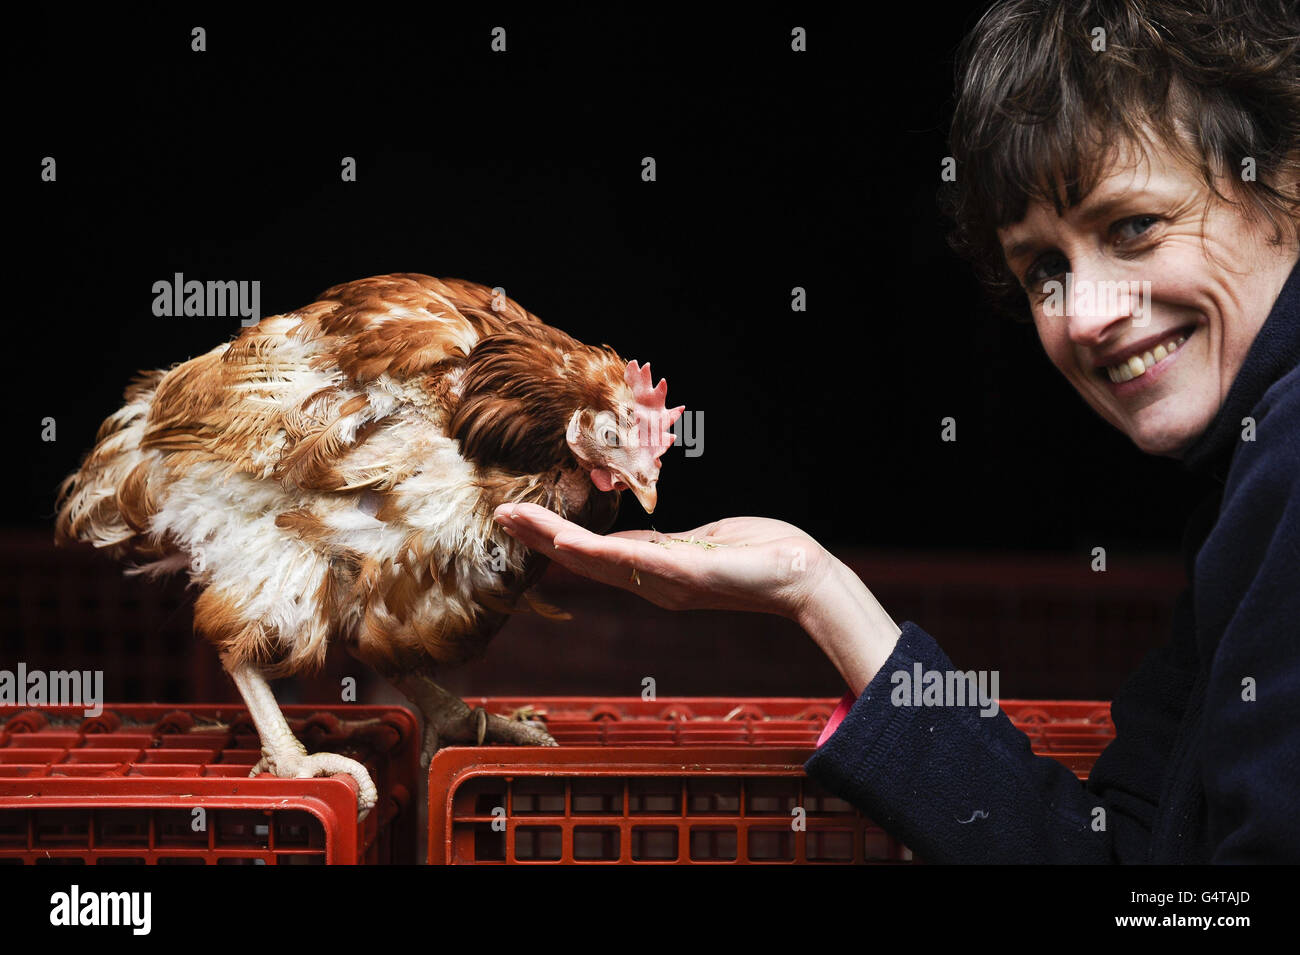 Jane Howorth, fondatrice de la British Hen Welfare Trust, et Liberty, la dernière poule aux batteries de Grande-Bretagne, qui a été réinstallée à la retraite dans une ferme de Chulmleigh, Devon, marquant la fin d'une ère pour les poules pondeuses commerciales, a déclaré l'organisme de bienfaisance. Banque D'Images